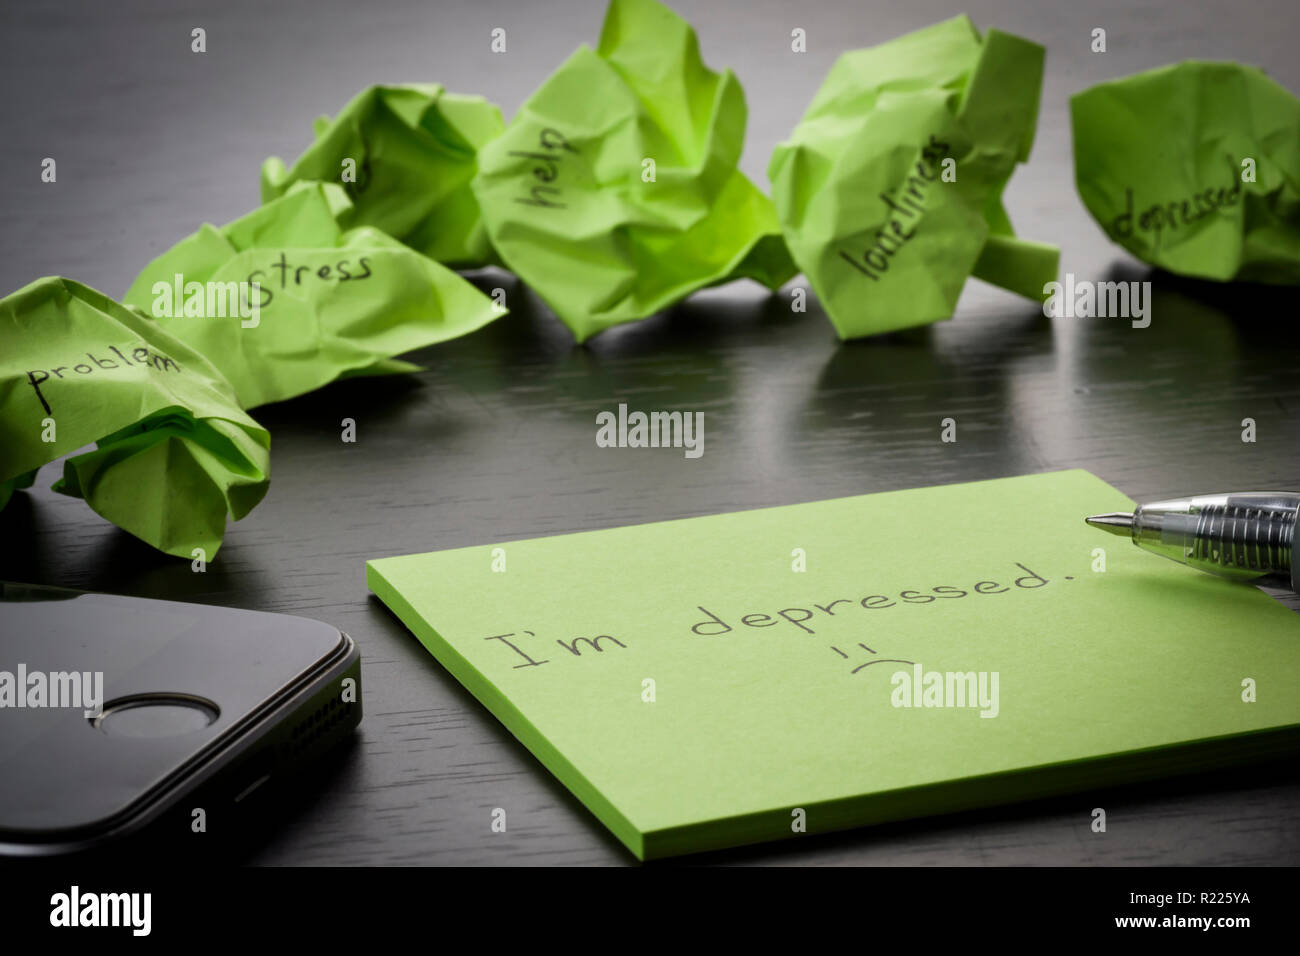 Depression. "Ich depressiv bin" liegt auf einem grünen Zettel auf Holz- schwarz Tabelle geschrieben. Zerknitterte grün Haftnotizen sind verstreut mit Texten. Stockfoto